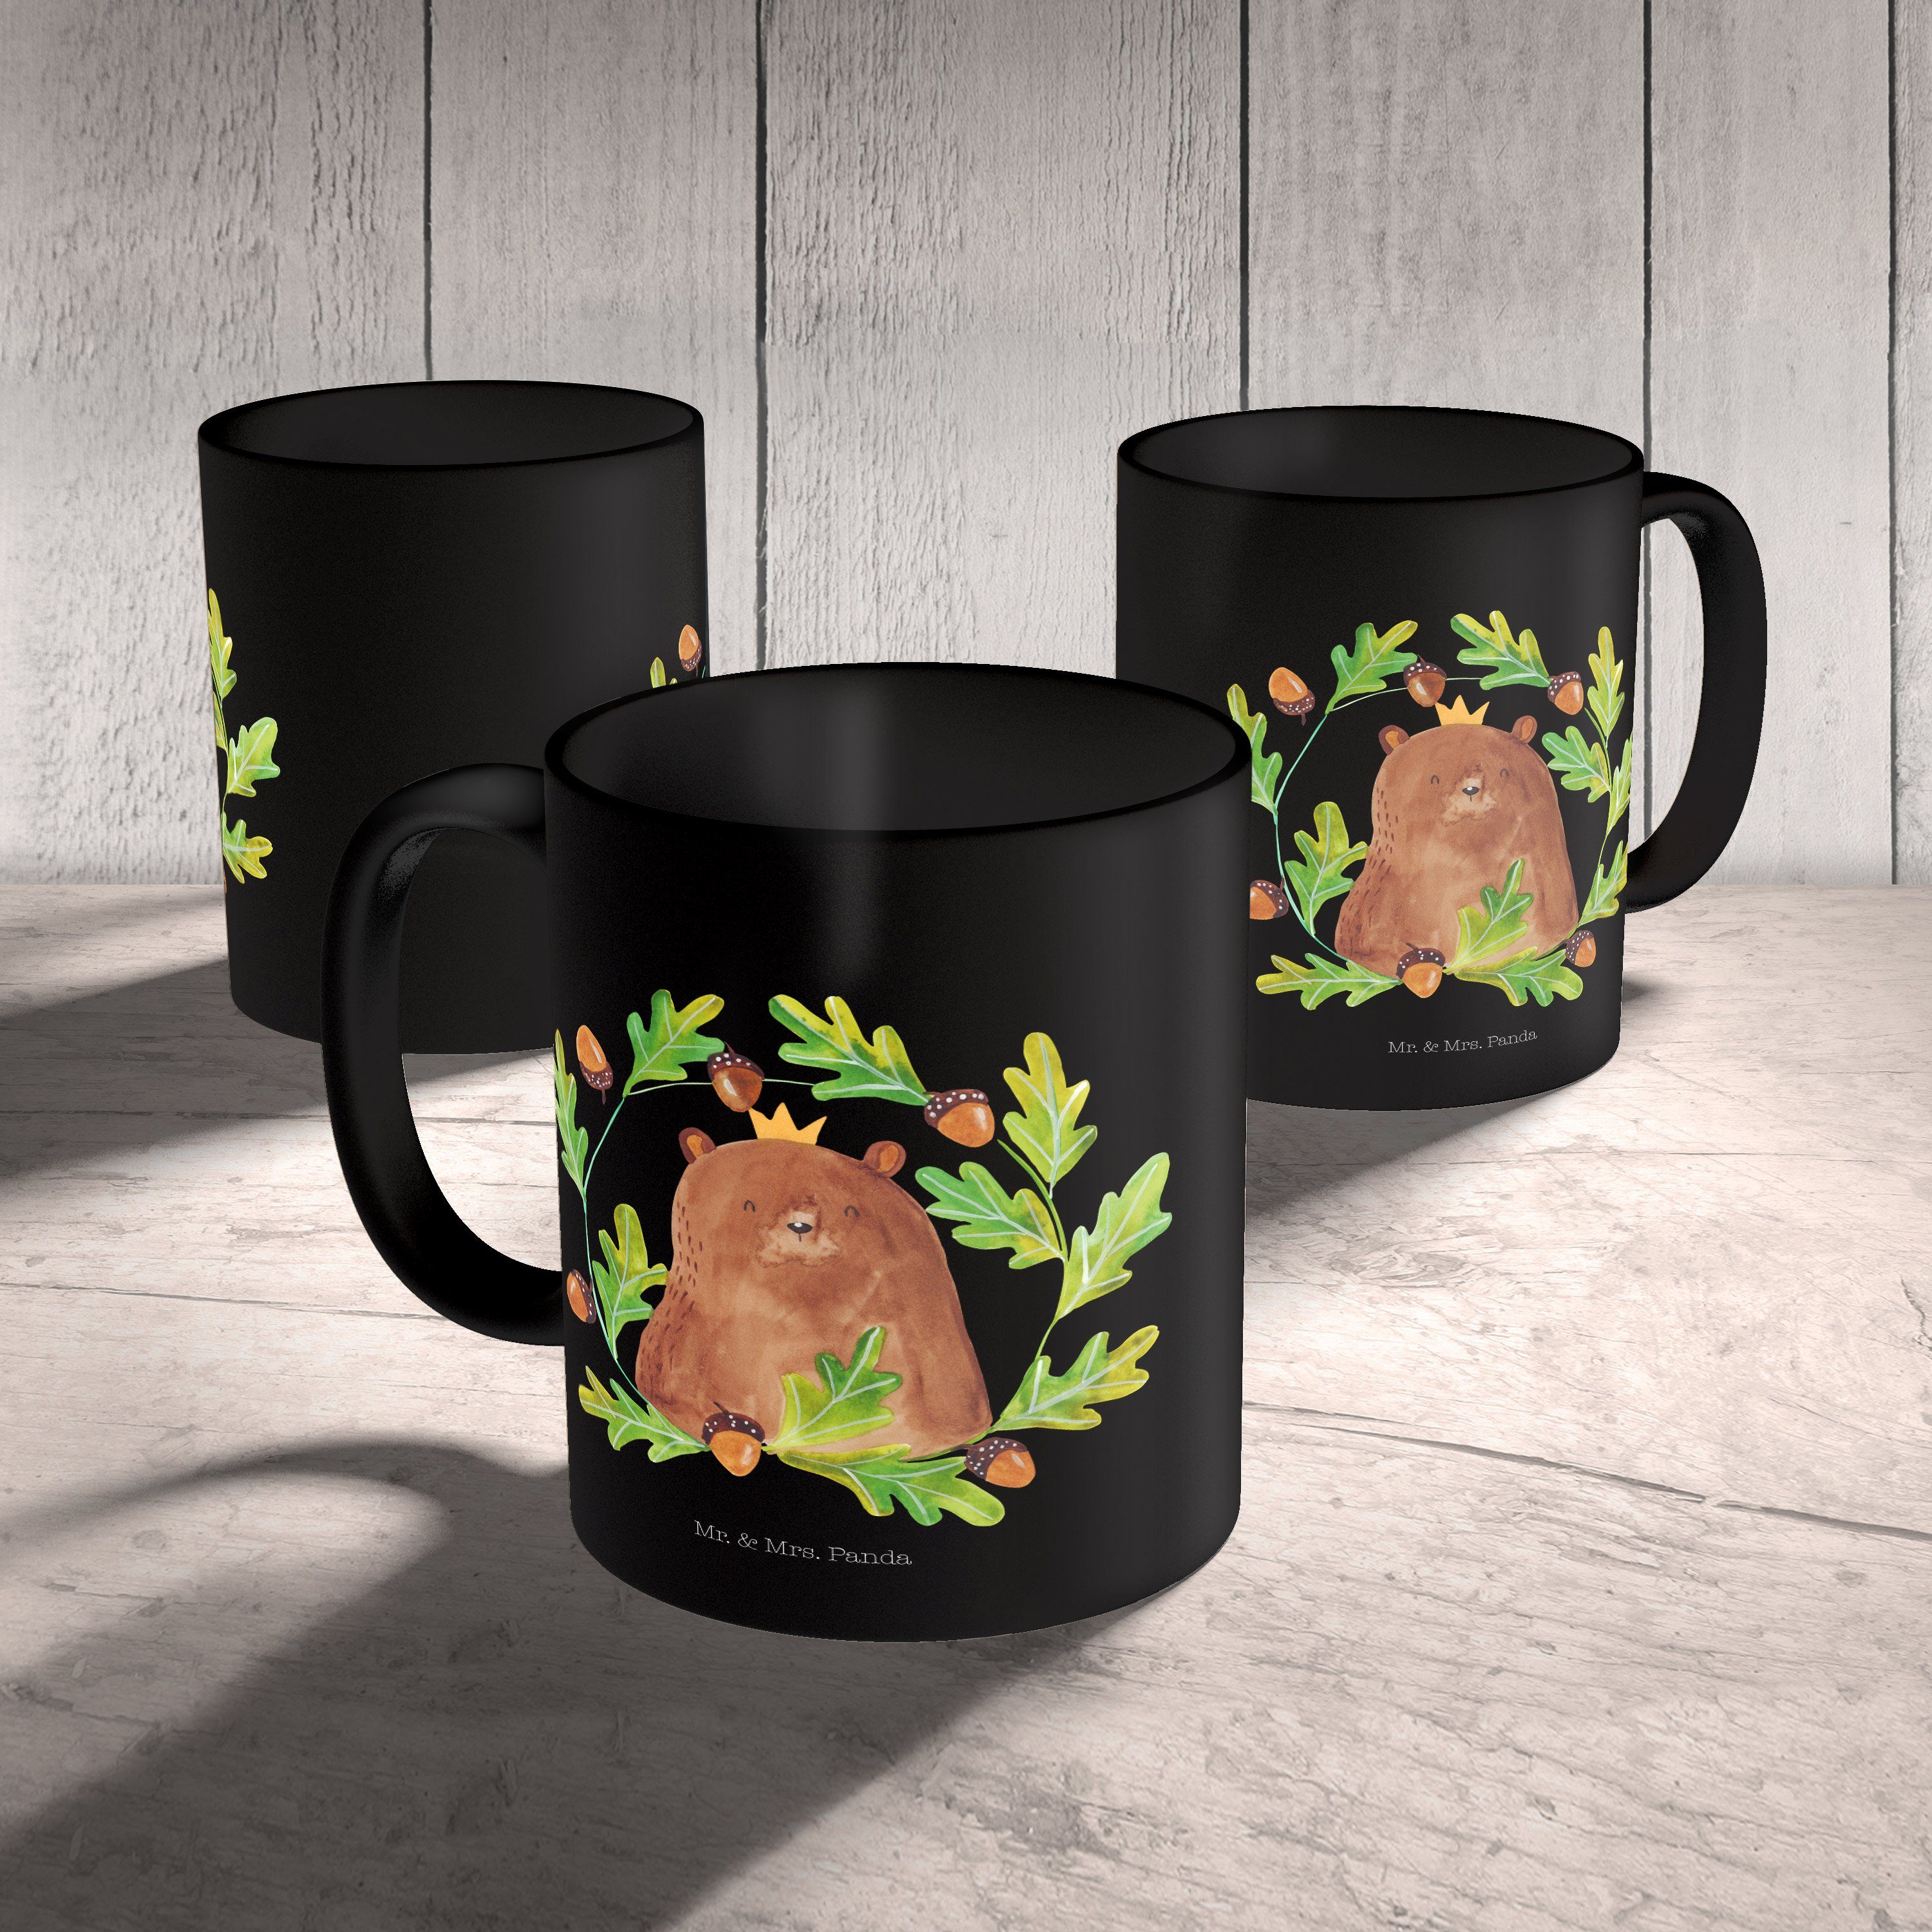 Keramik Kaffeetasse, Teddy, Bär Tasse, Panda Mr. - T, Schwarz & Geschenk - Schwarz Tasse König Geschenk, Mrs.